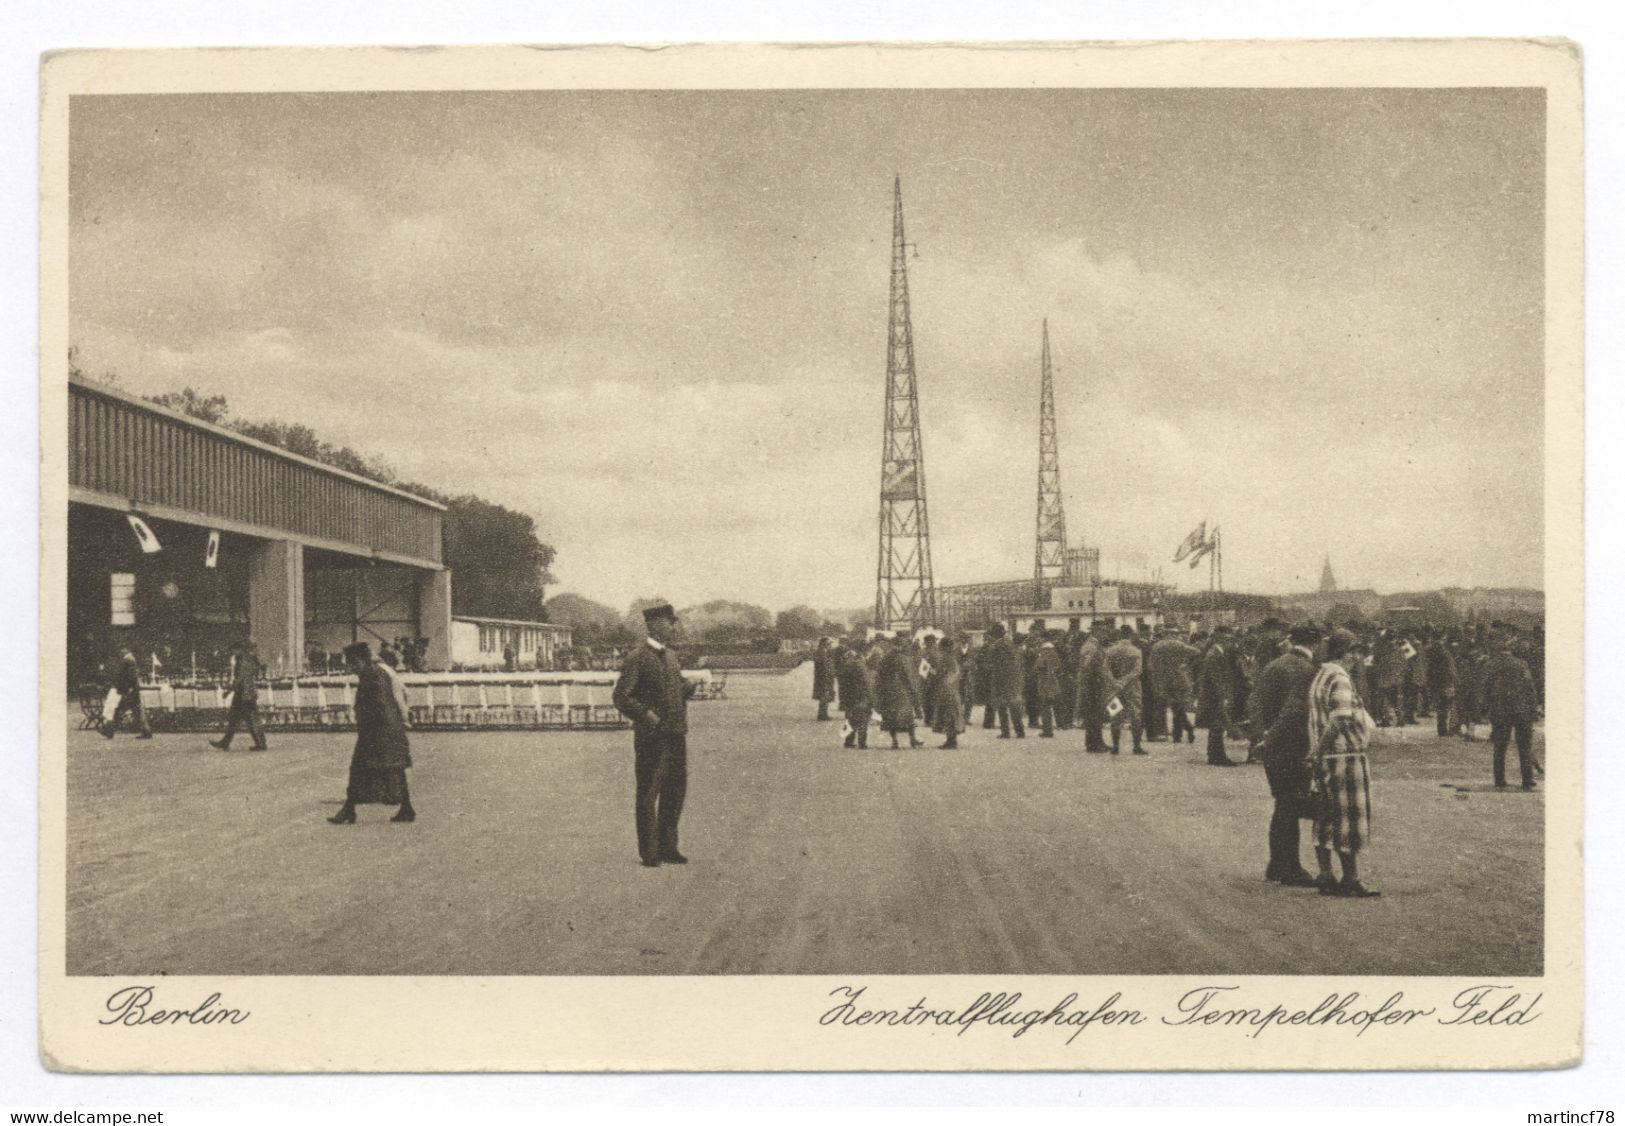 1000 Berlin Zentralflughafen Tempelhofer Feld - Tempelhof